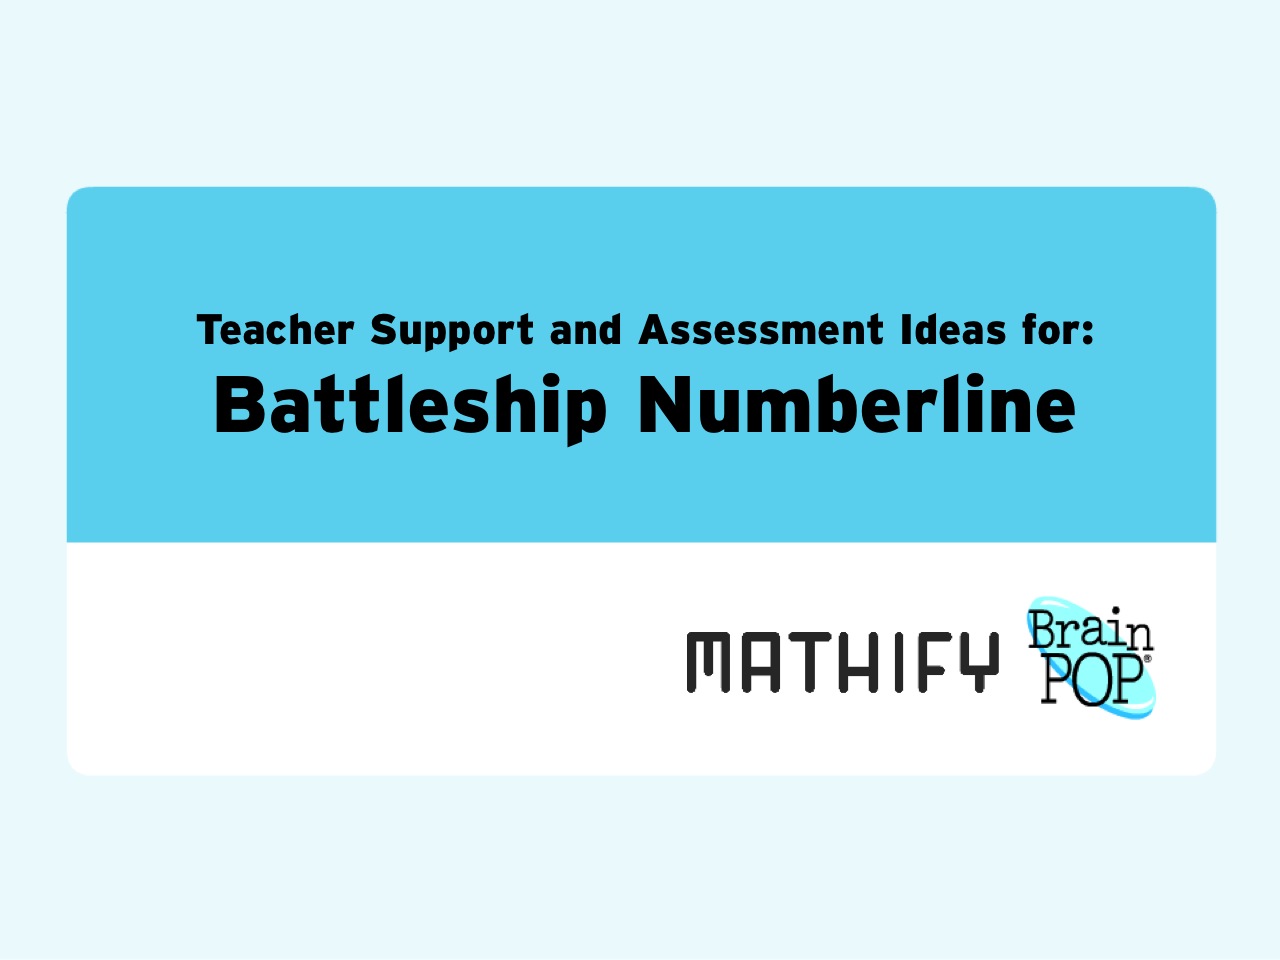 Battleship Numberline Math Game: Teacher Support Materials and Assessment